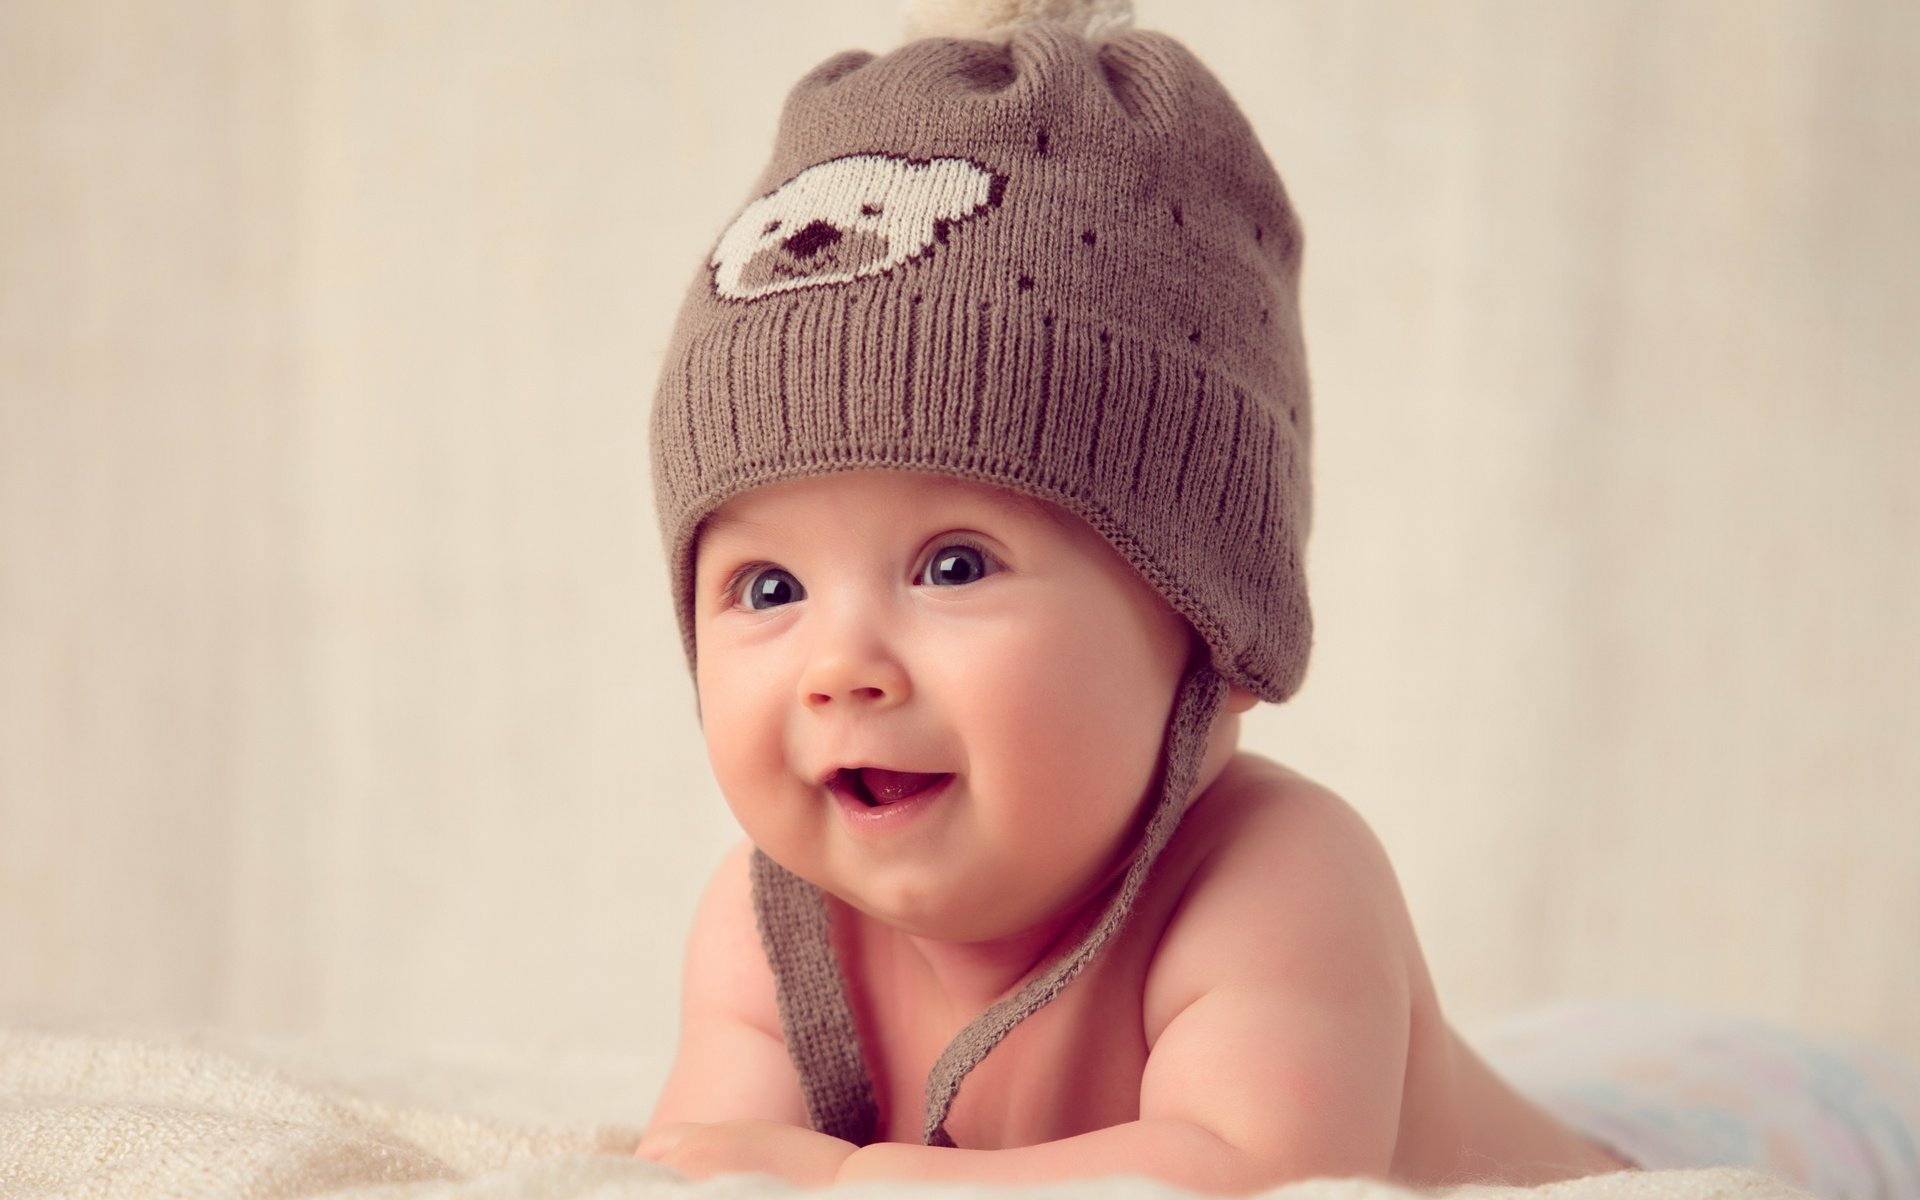 壁纸 微笑的可爱宝宝 2560x1600 HD 高清壁纸, 图片, 照片